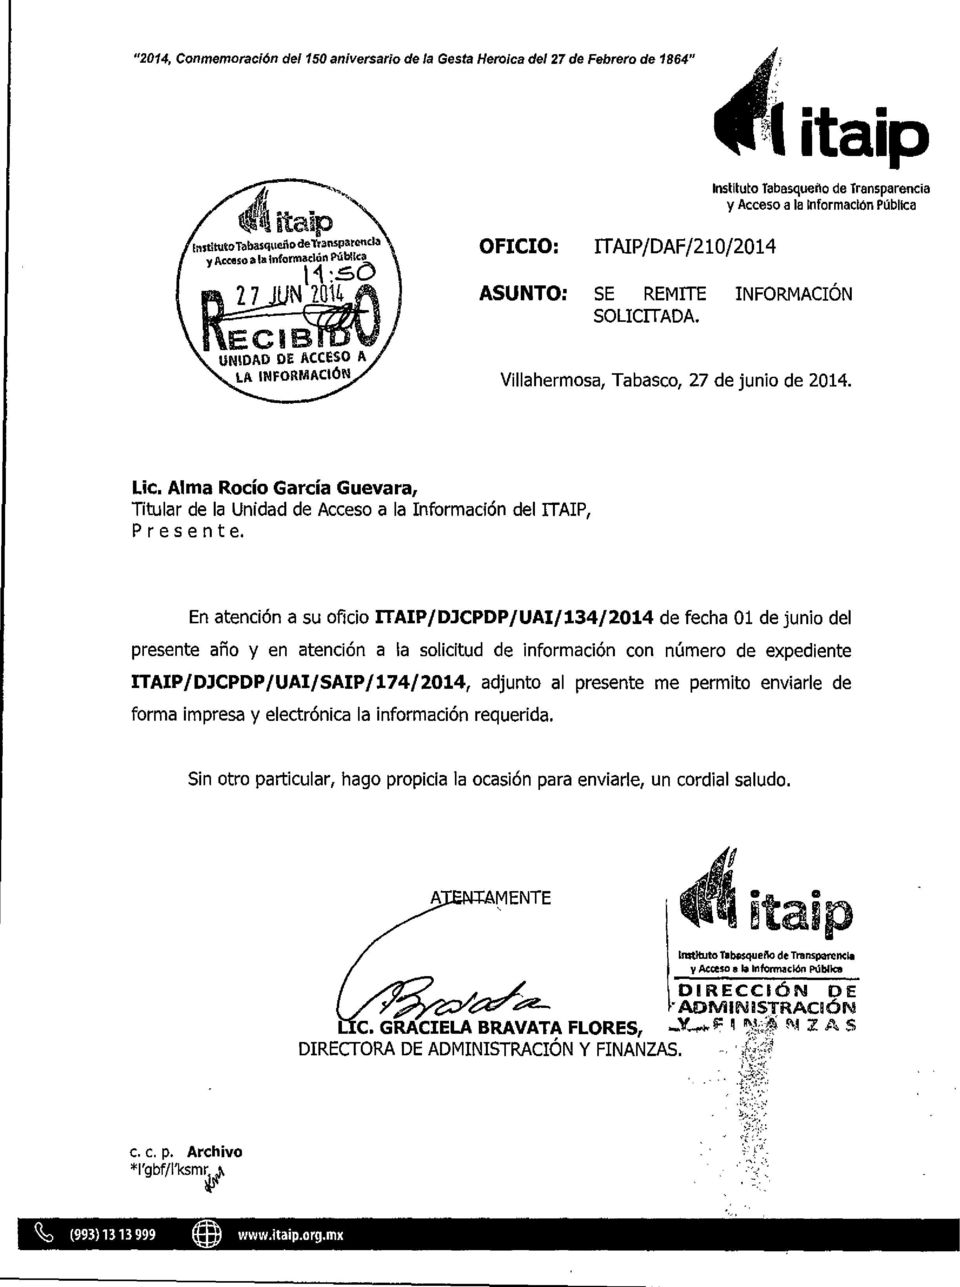 Alma Rocío García Guevara, Titular de la Unidad de Acceso a la Información del ITAIP, Presente.